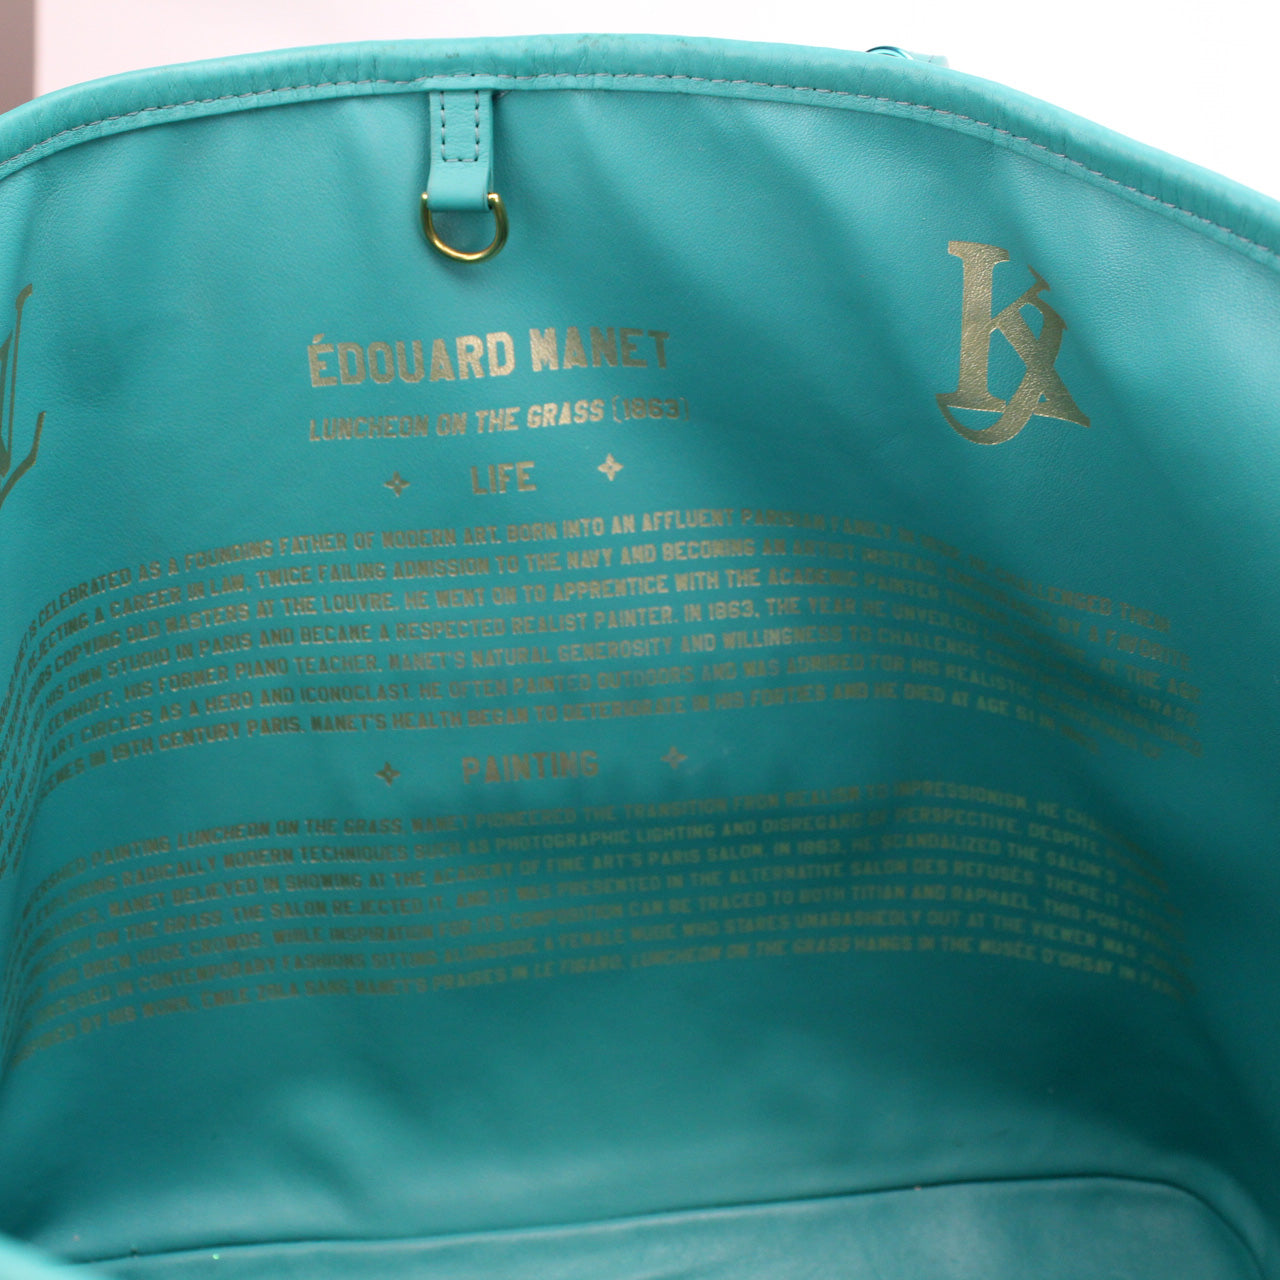 Neverfull MM Monogram World Tour – Keeks Designer Handbags